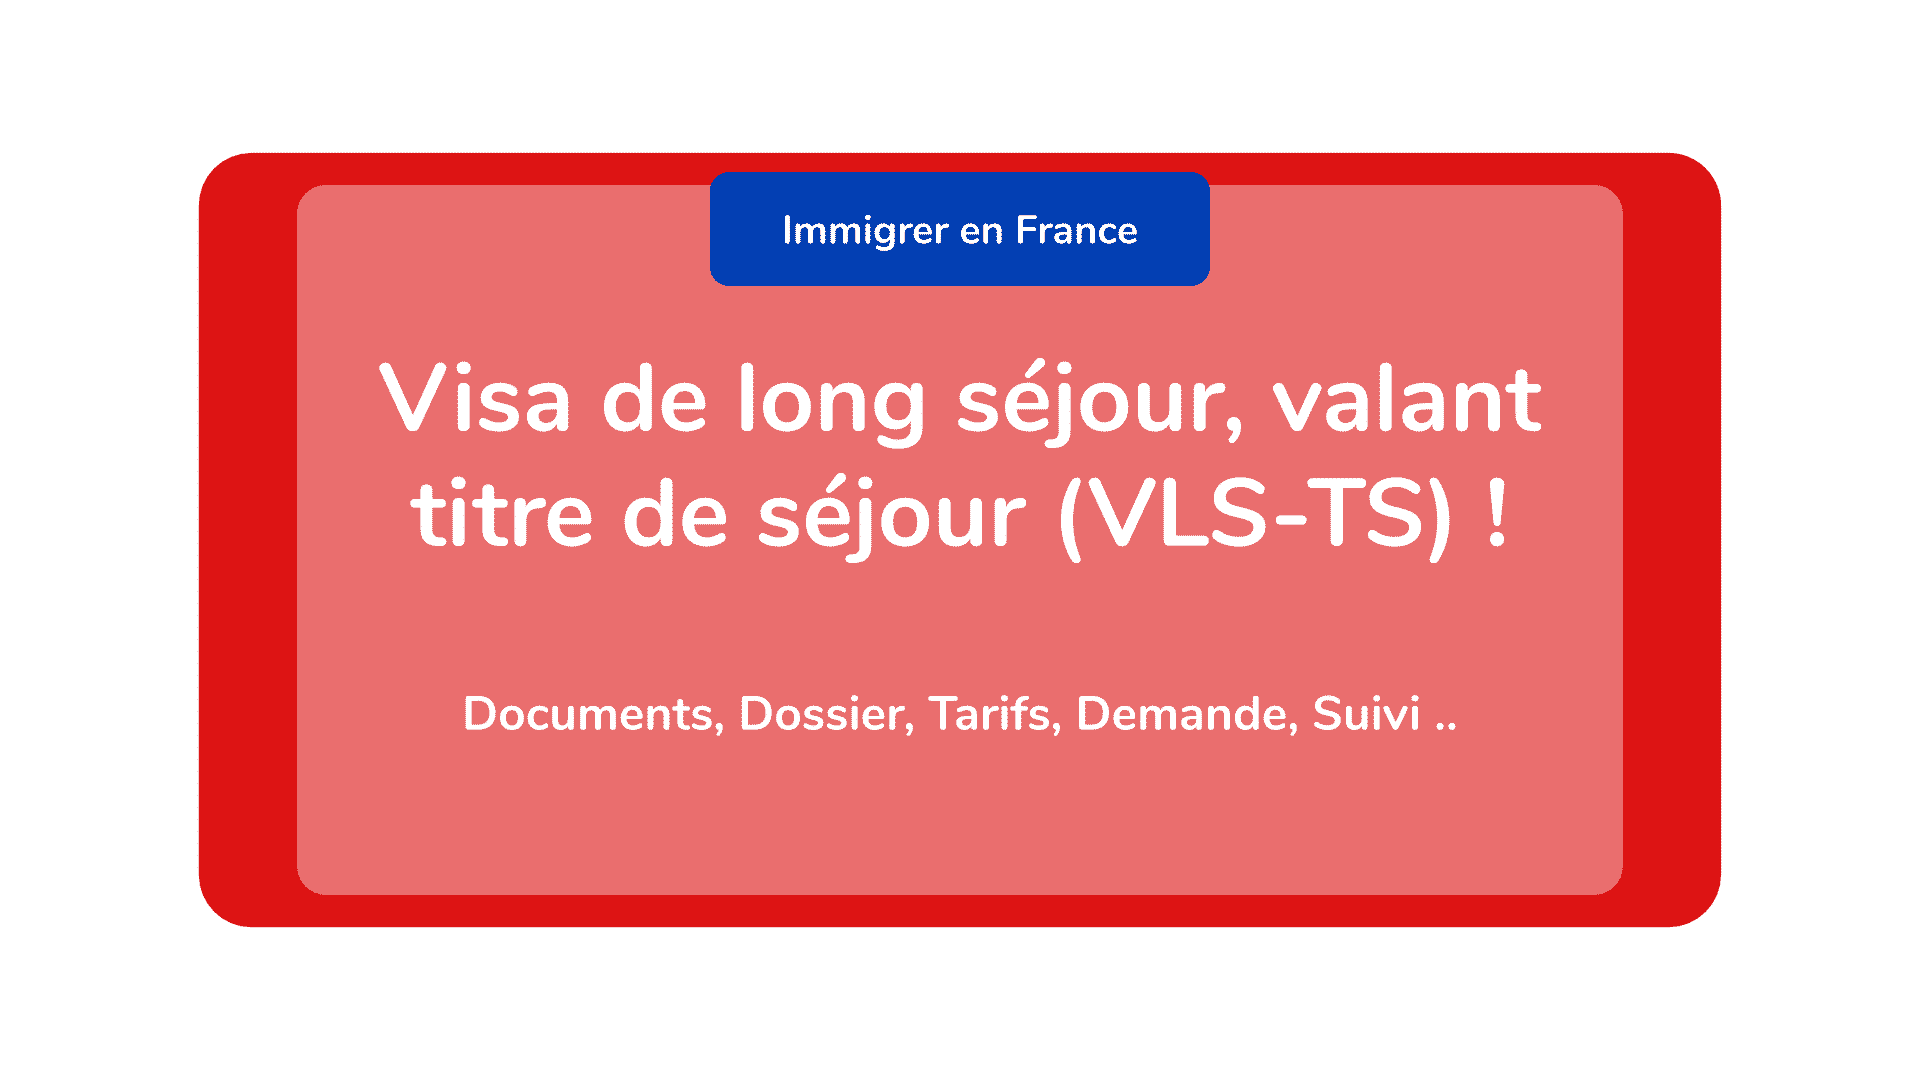 Visa de long séjour, valant titre de séjour (VLS-TS) ! Documents, Dossier, Tarifs, Demande, Suivi ..